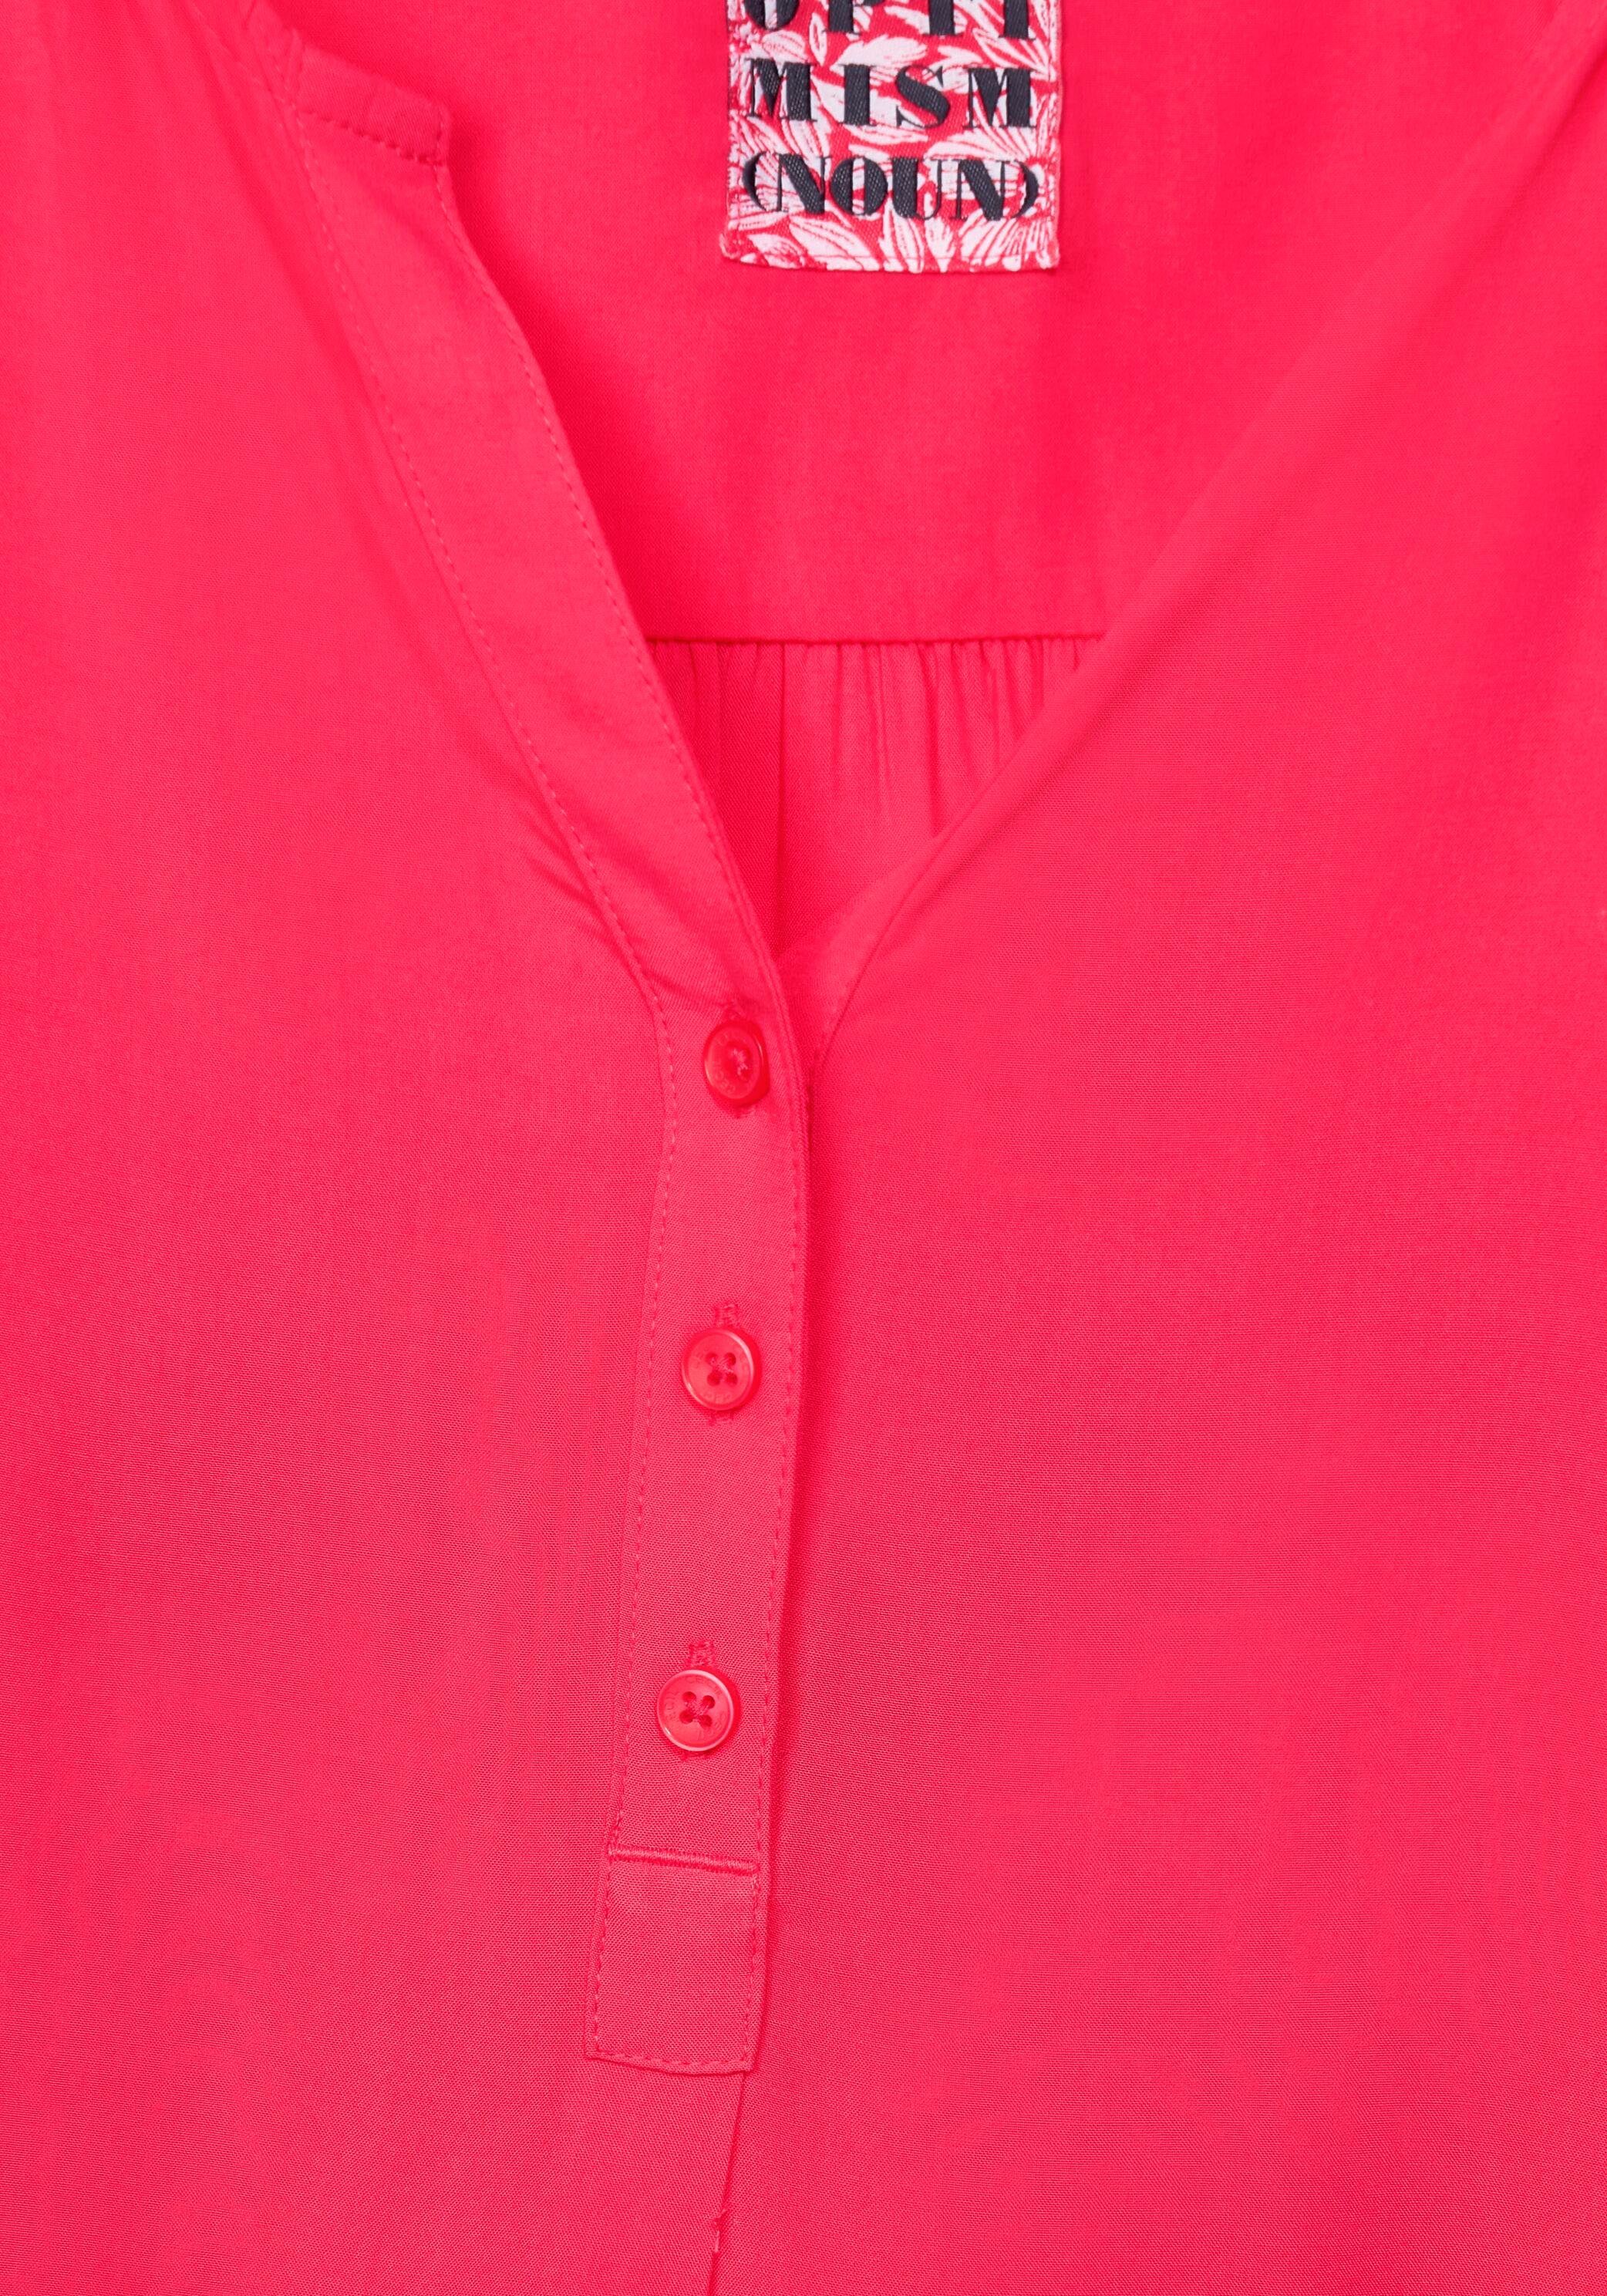 Serafinoausschnitt pink Cecil Shirtbluse mit